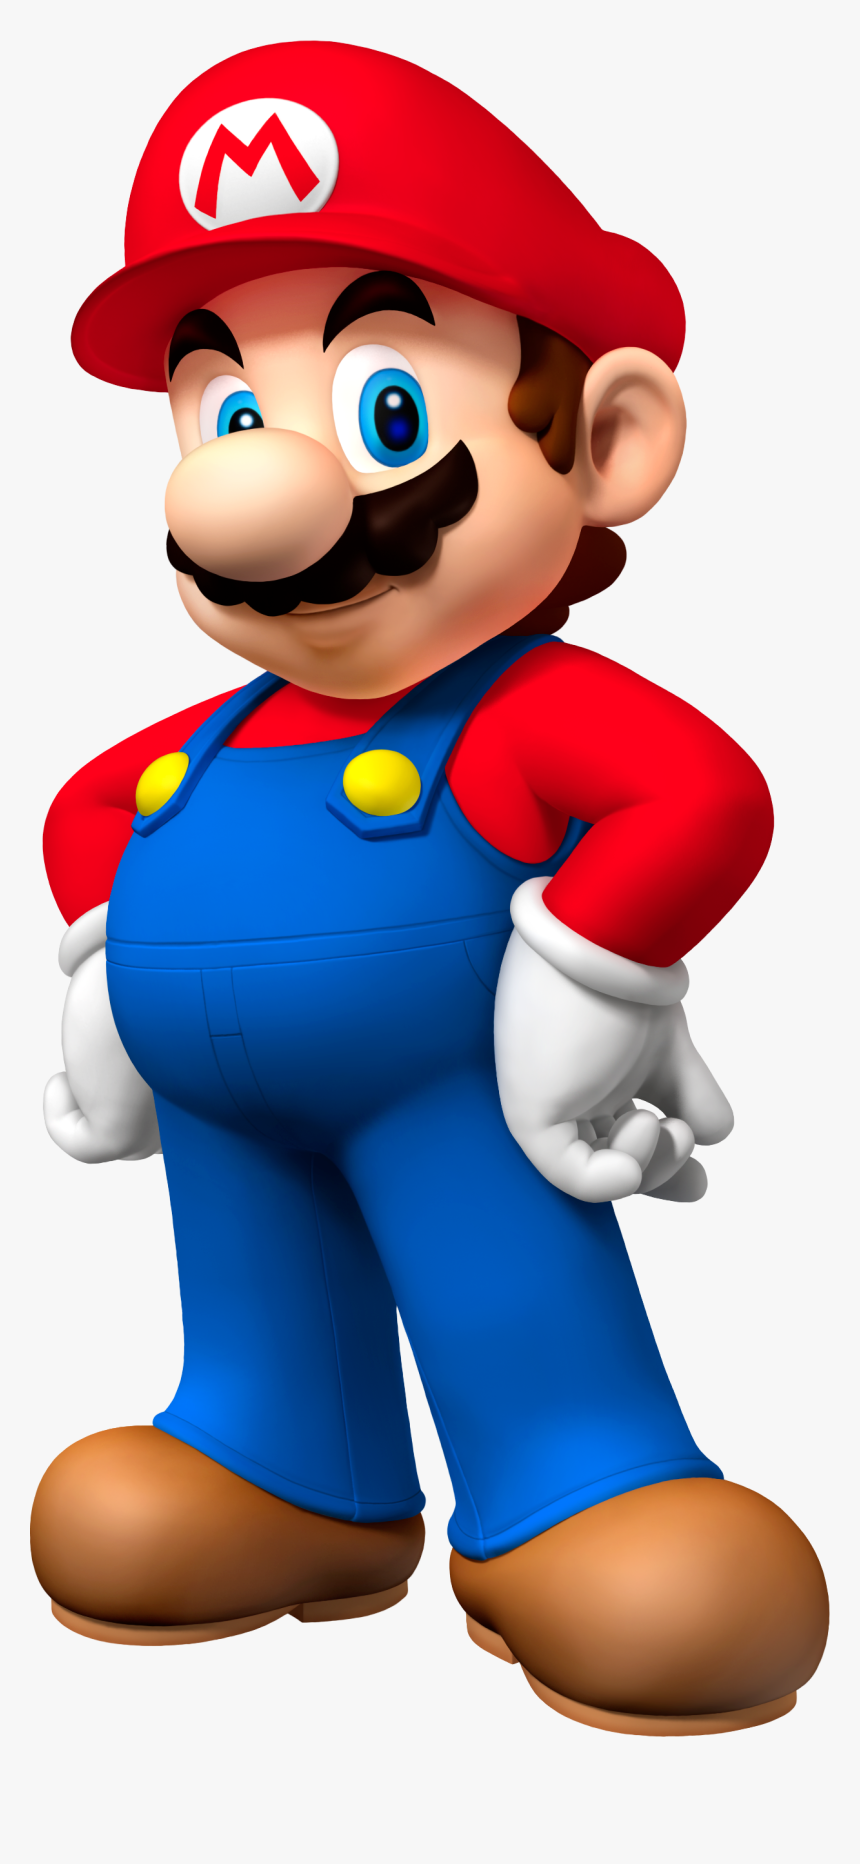 Super Mario Mario, HD Png Download, Free Download